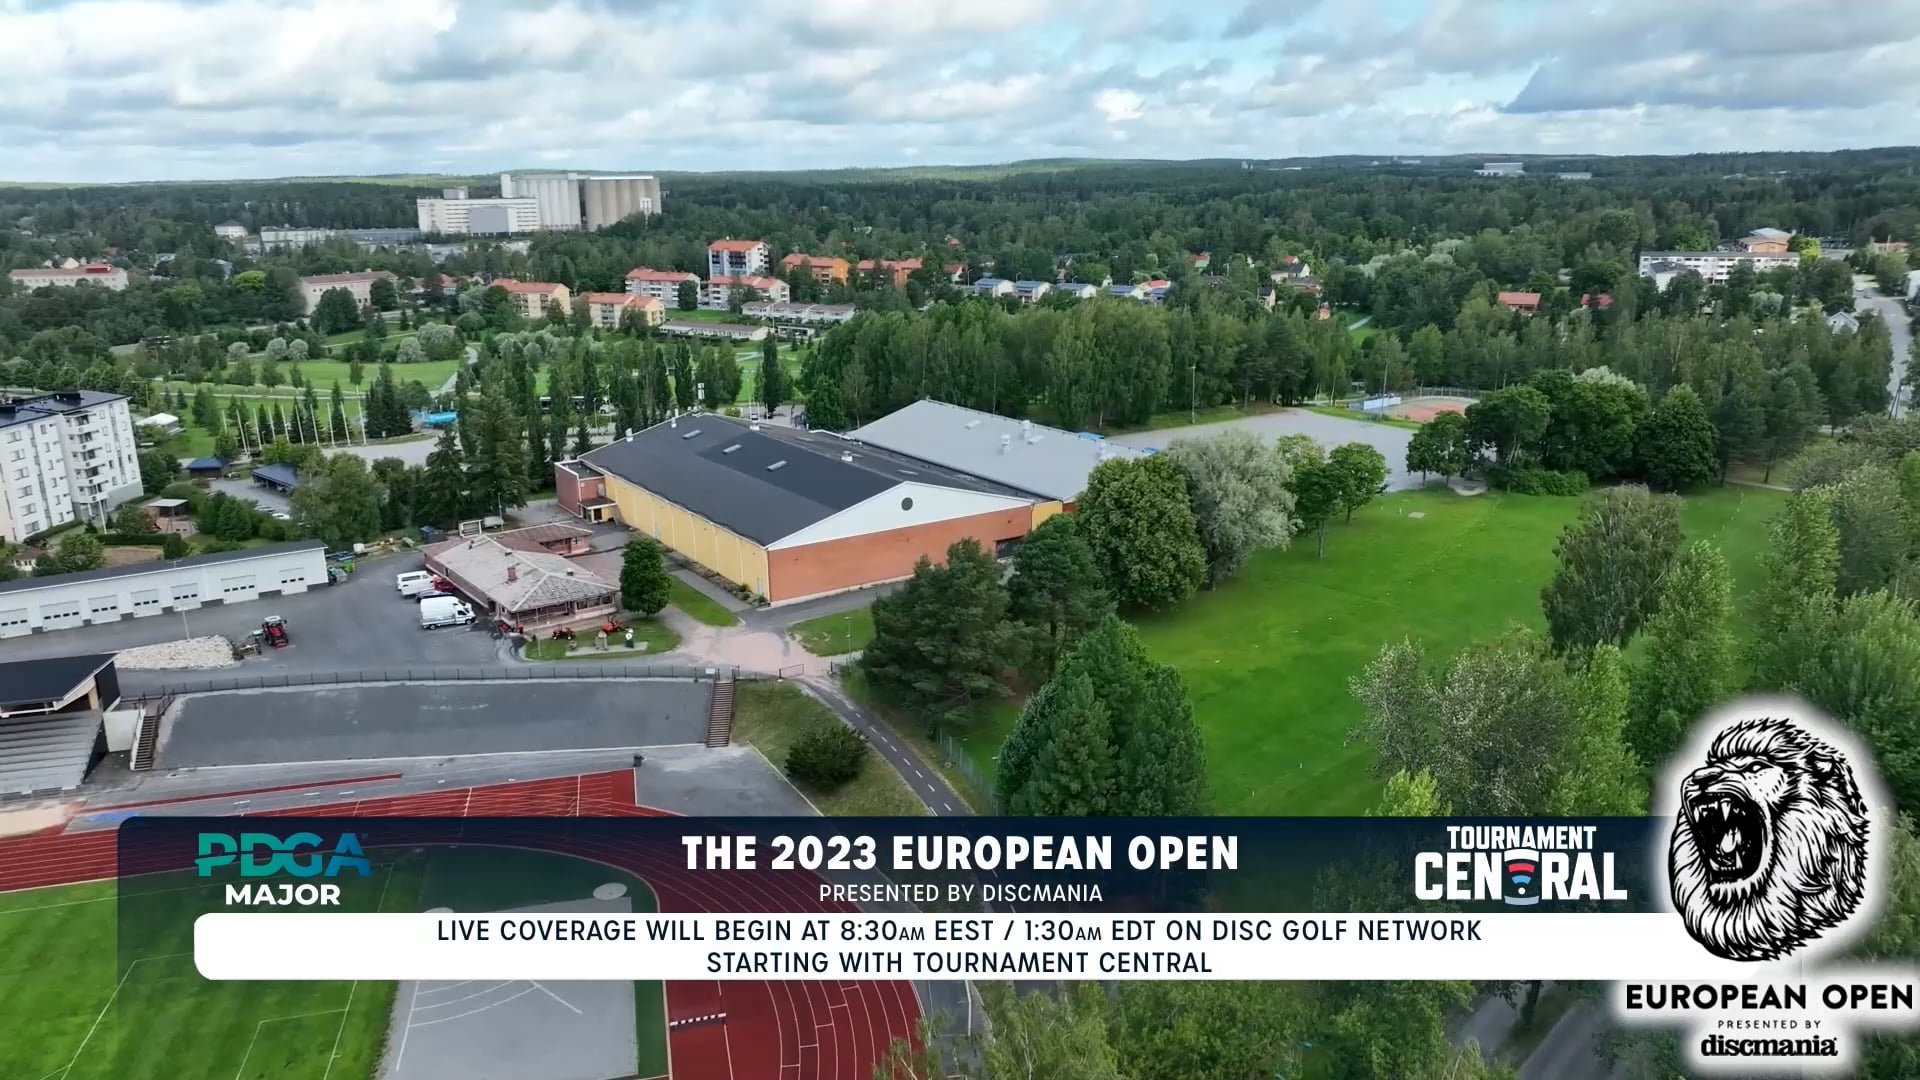 Round 2, FPO 2023 European Open on Vimeo